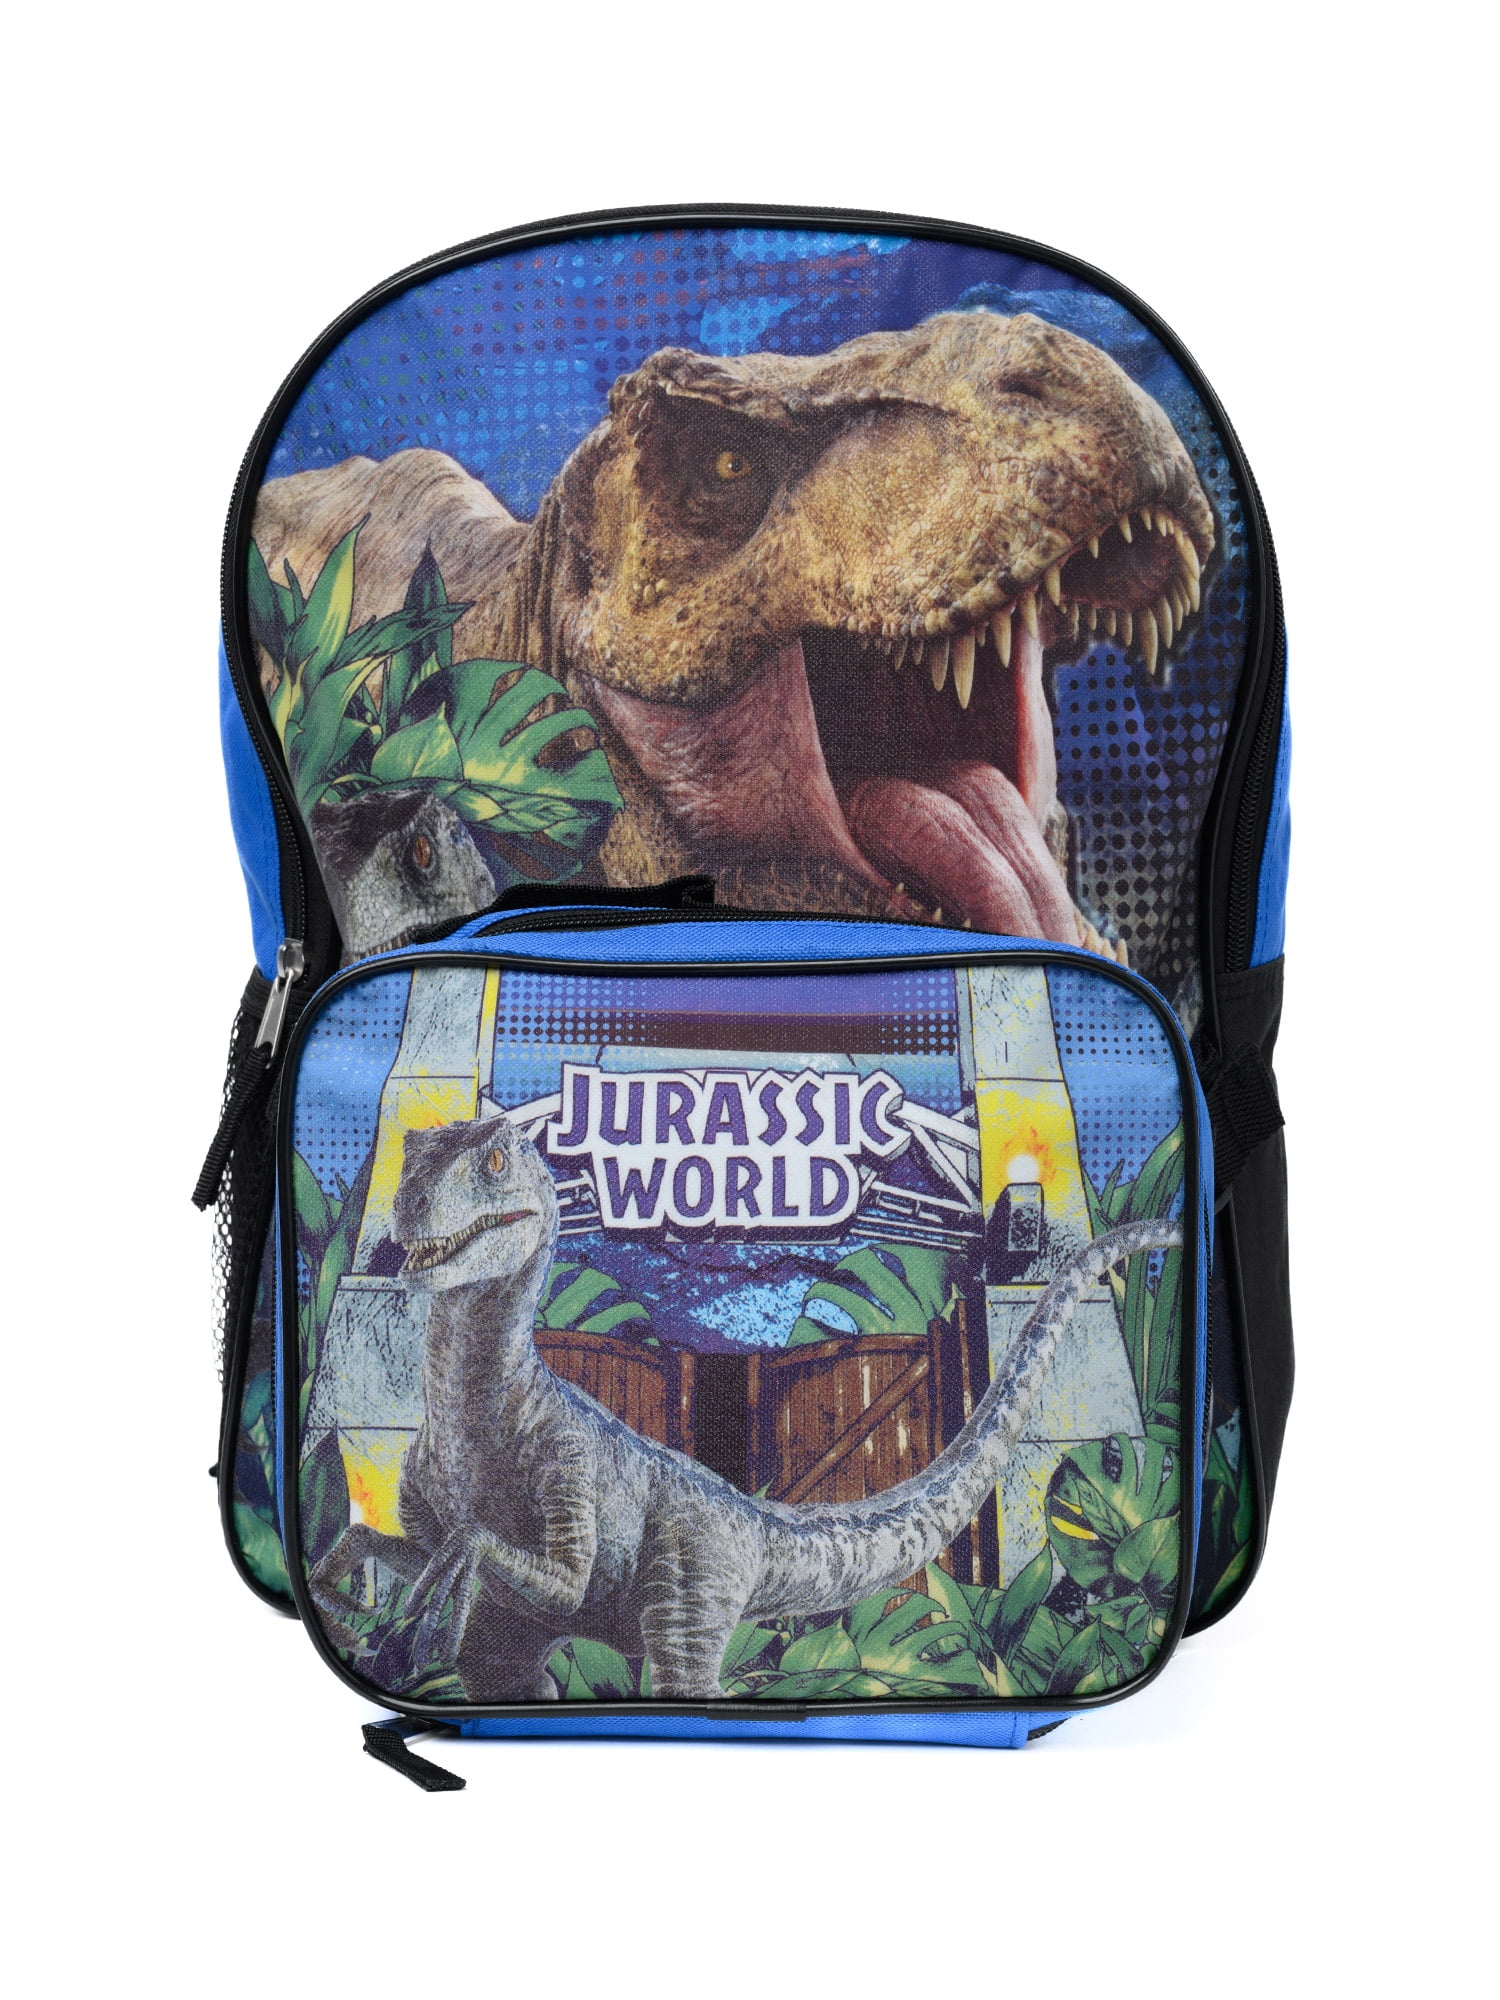 Jurassic World Dinosaur Backpack 16